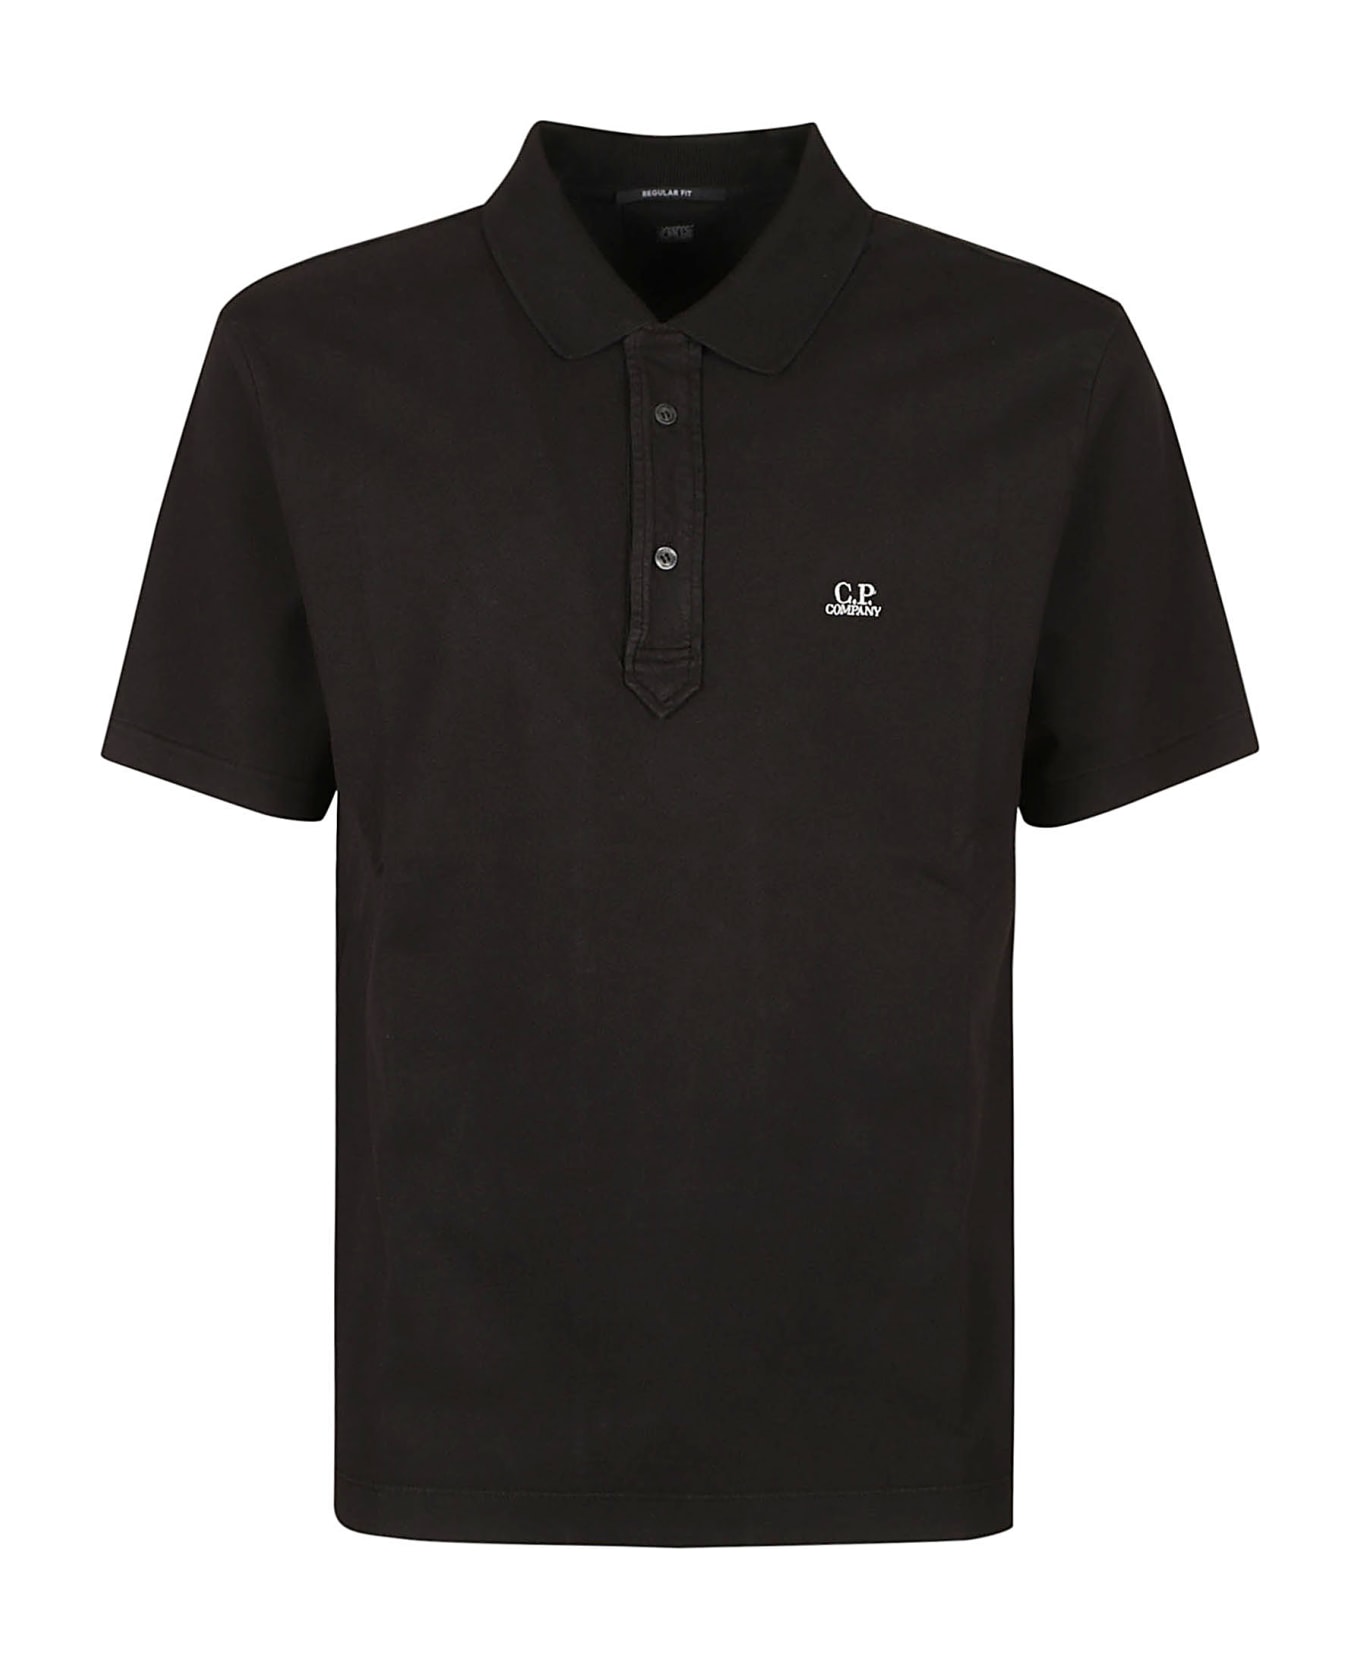 C.P. Company 1020 Short-sleeved Polo Shirt - Black